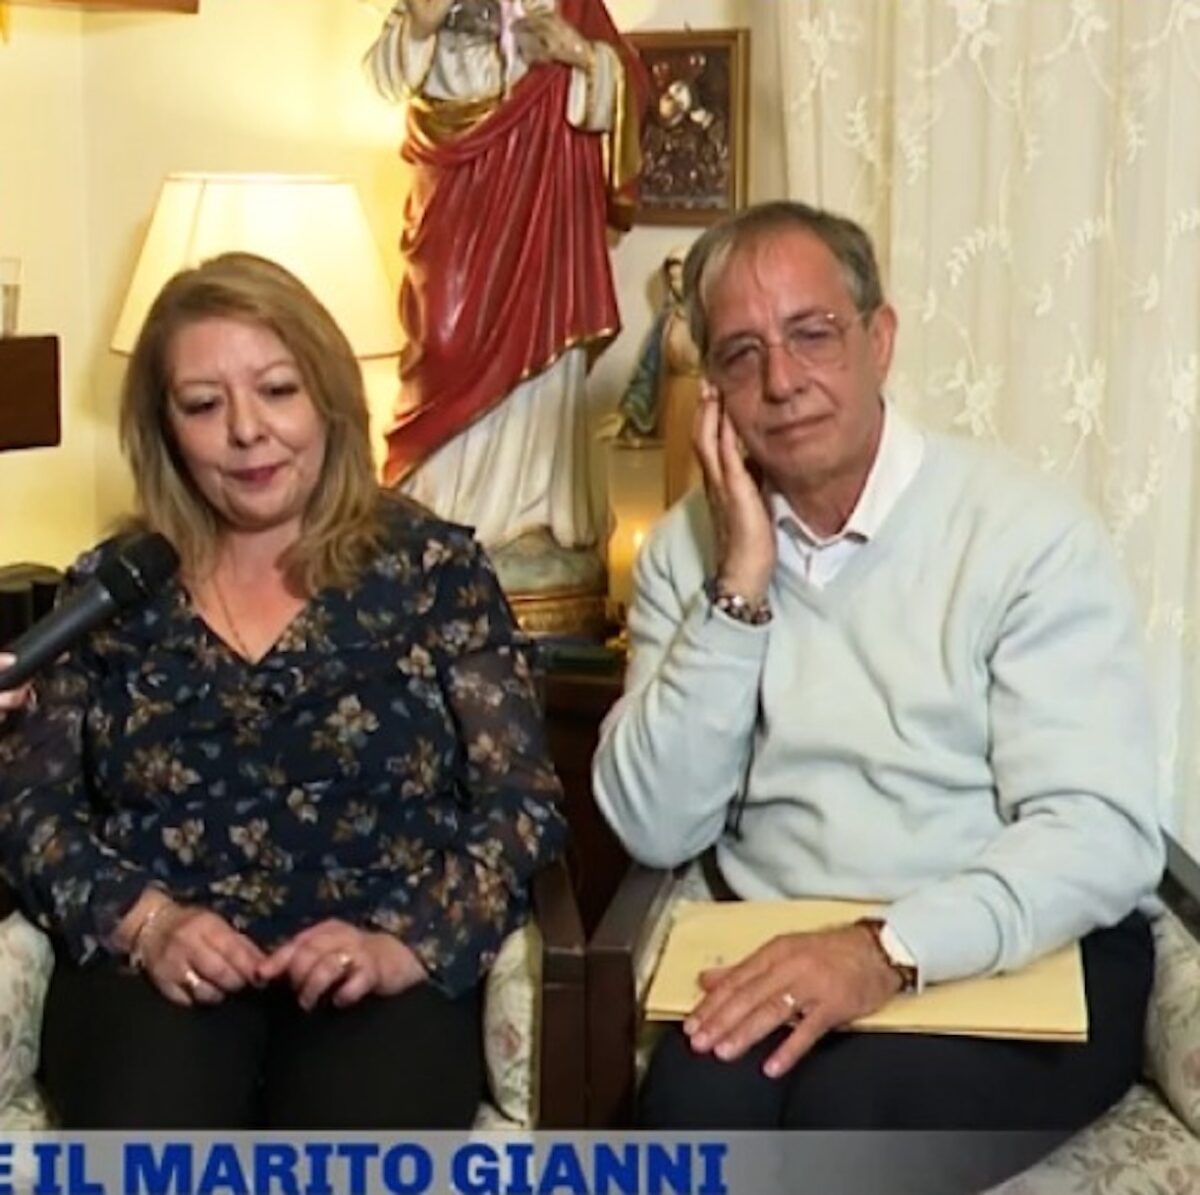 La Madonna di Trevignano piange in diretta tv da Barbara D’Urso